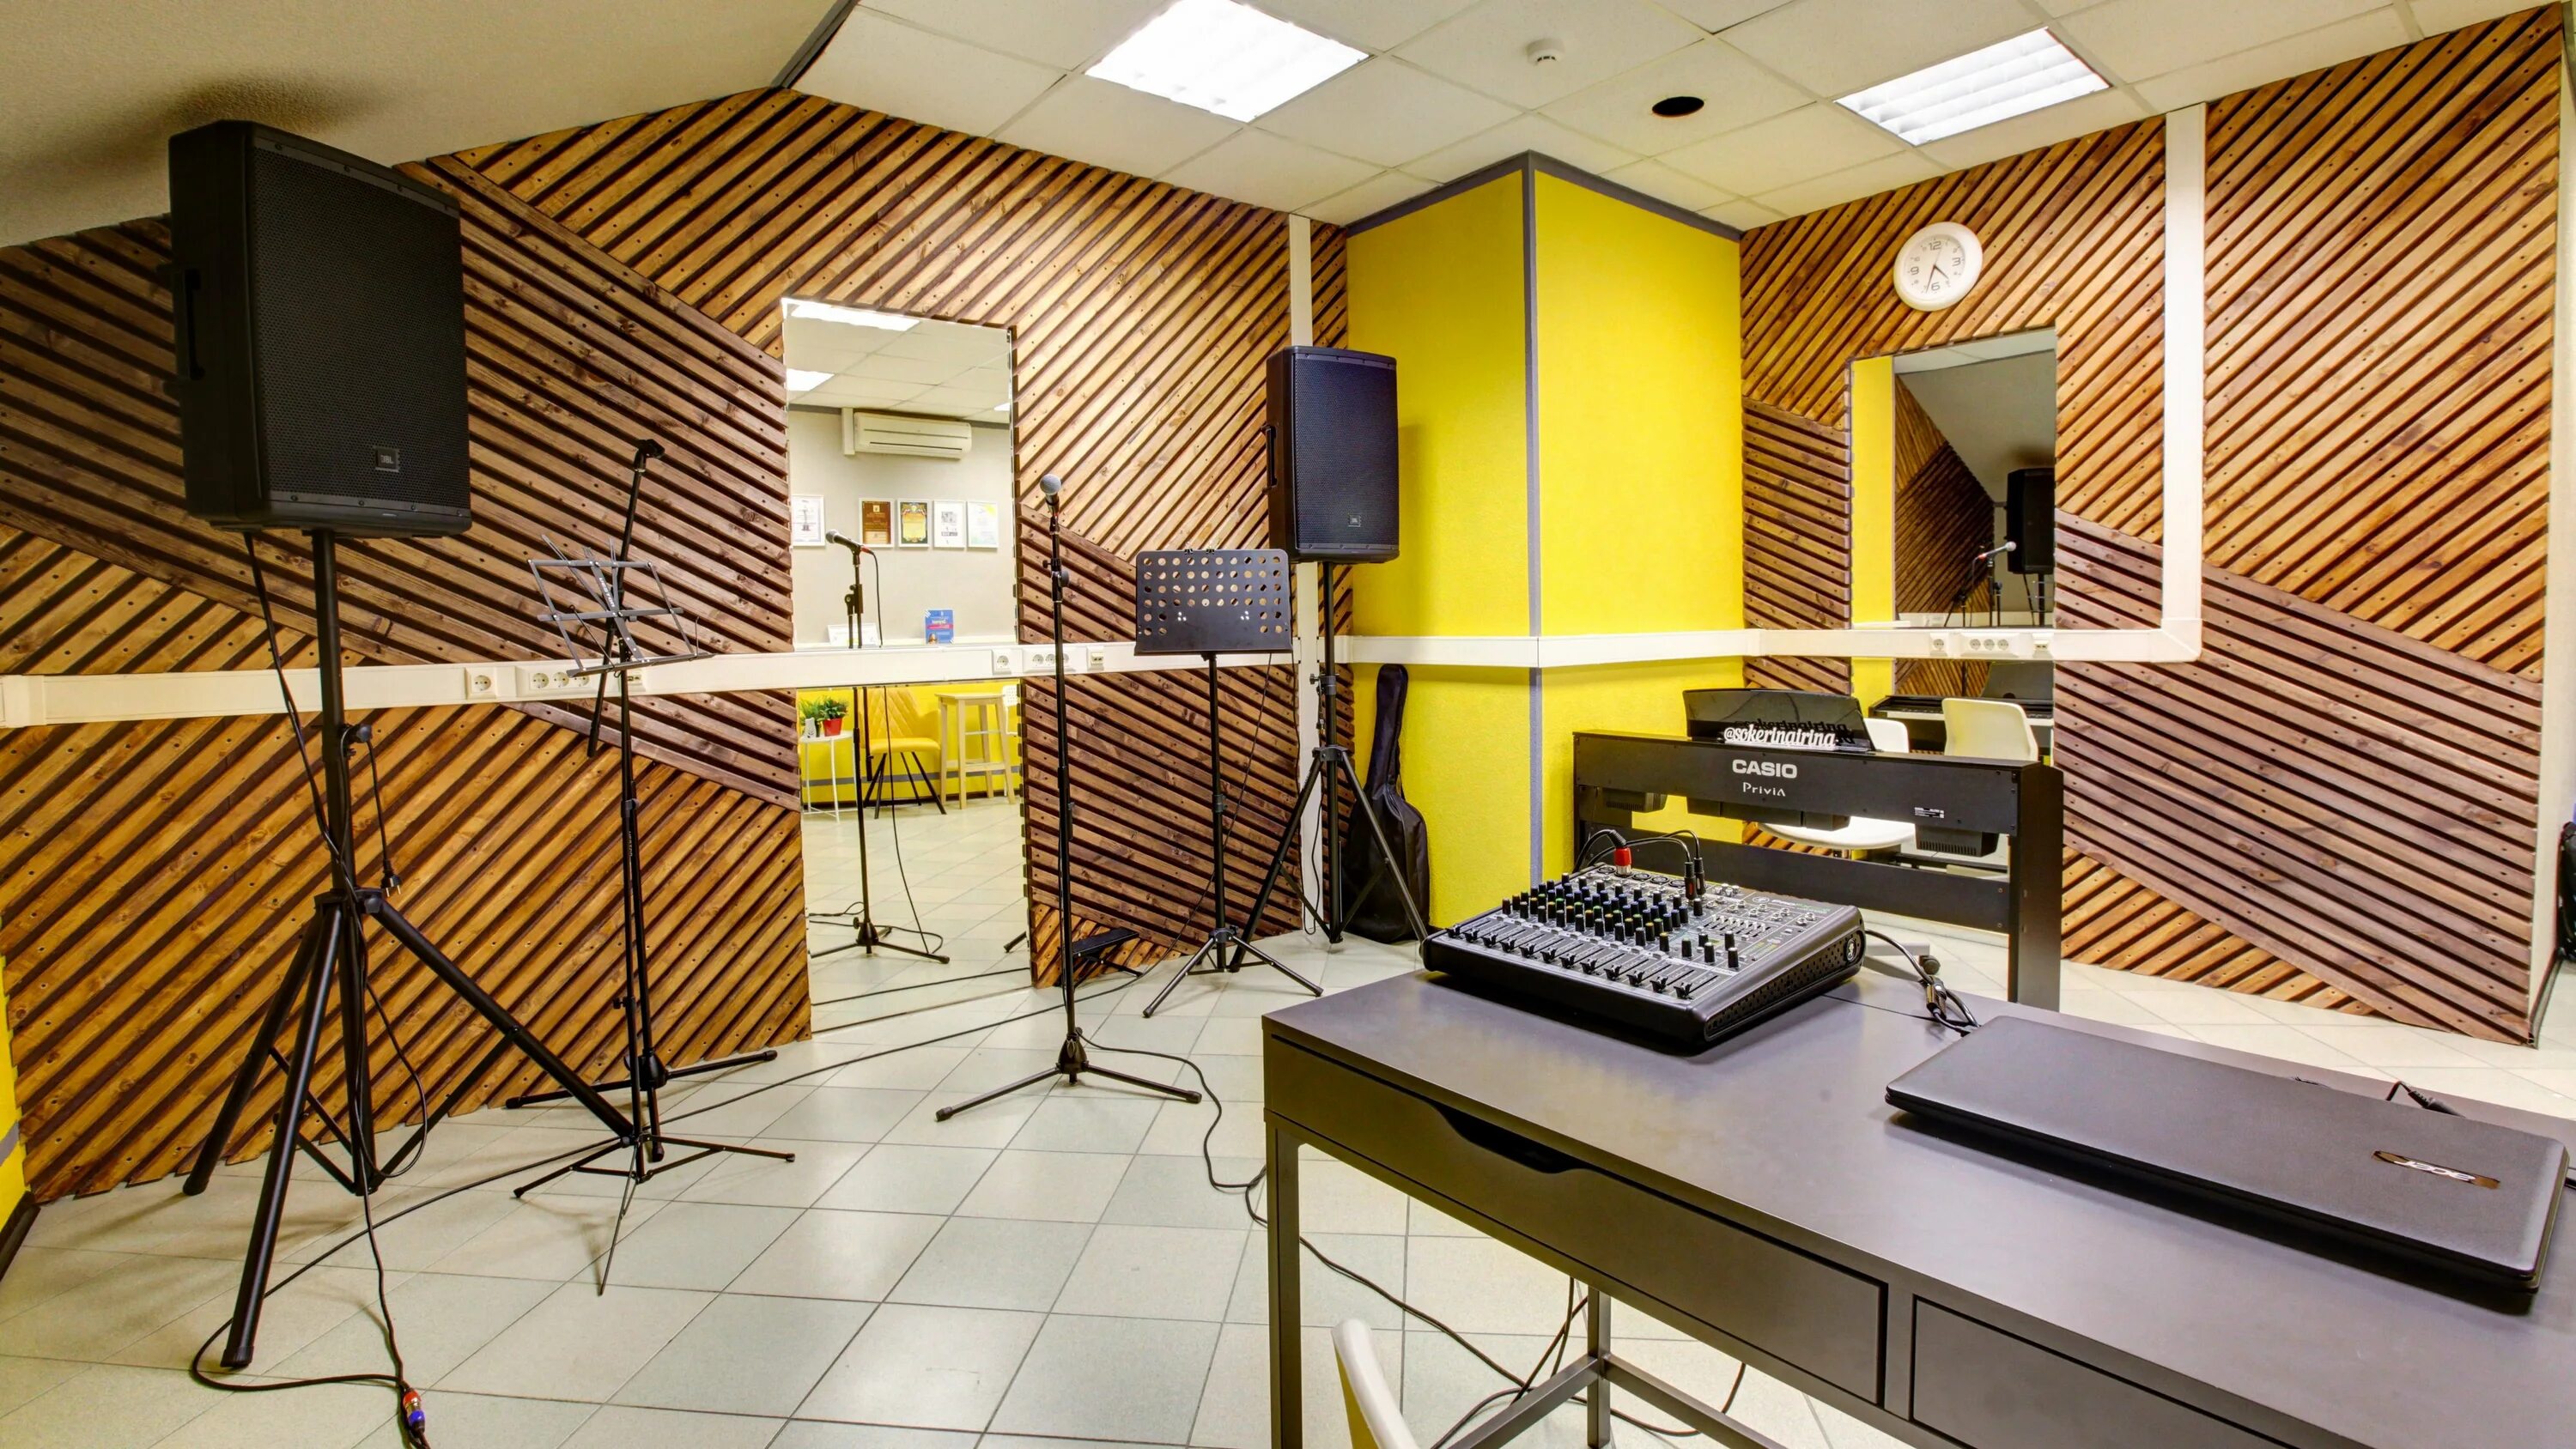 Частные уроки вокала в москве. Студия. Оборудование для студии звукозаписи. Студия вокала. Оборудование для вокальной студии.